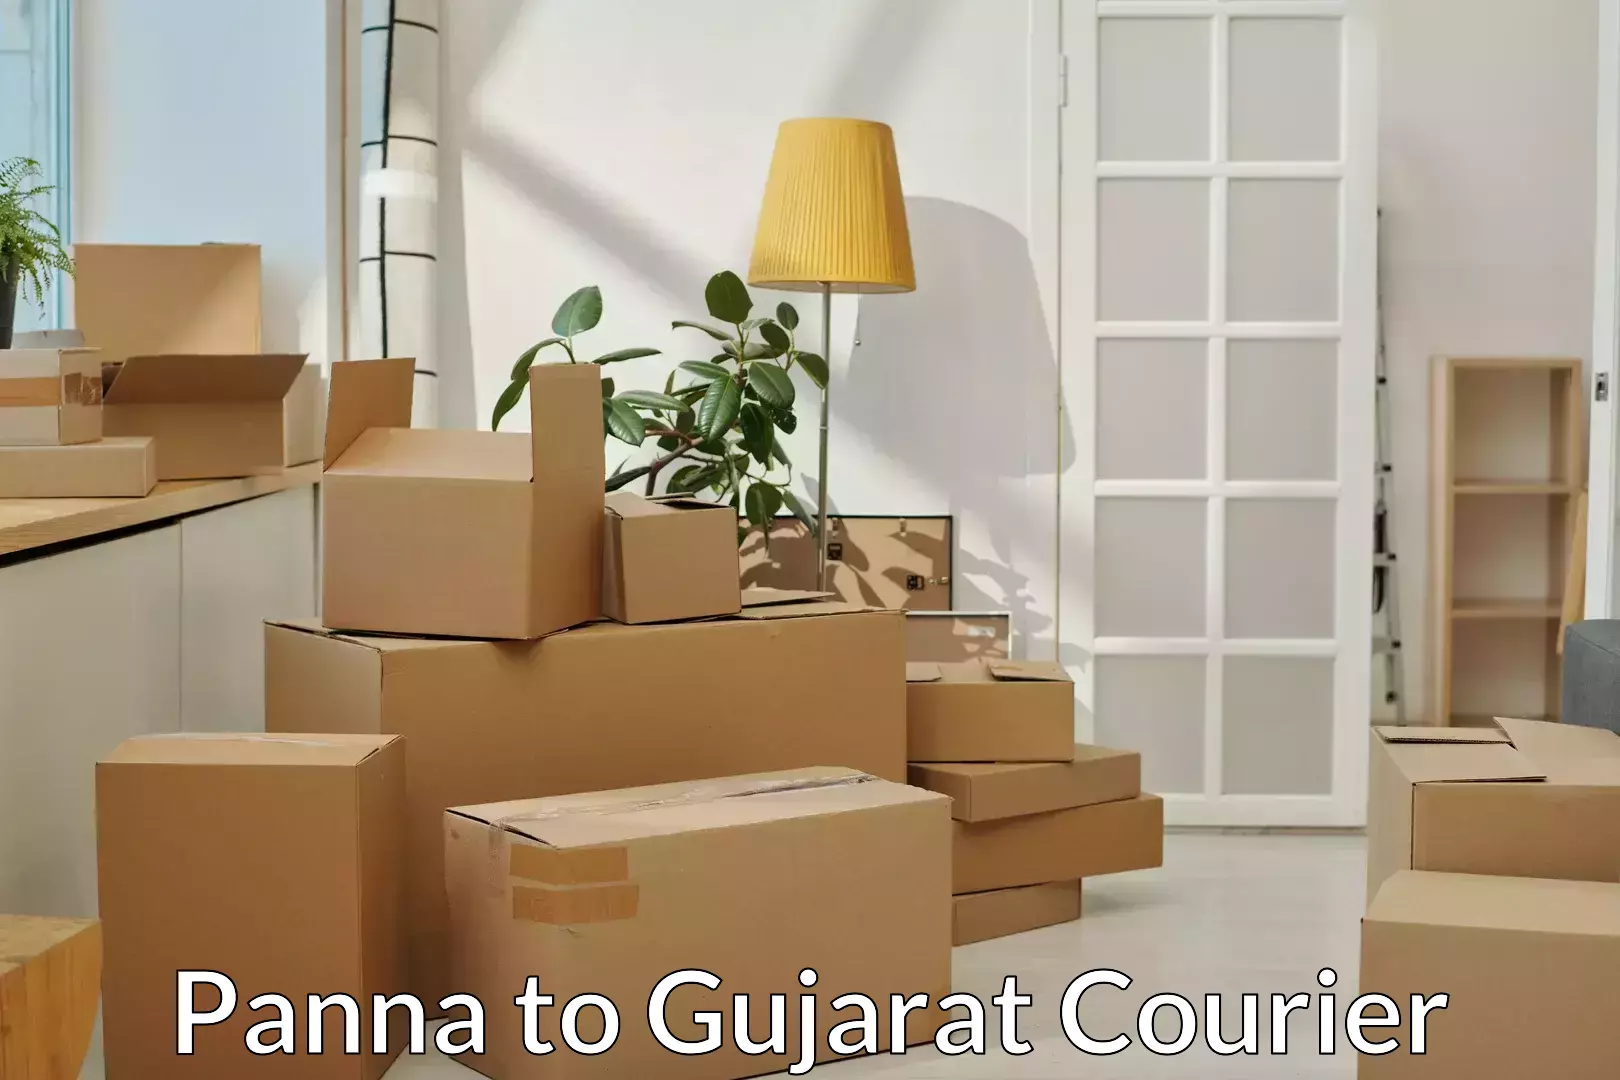 Professional movers Panna to Narmada Gujarat